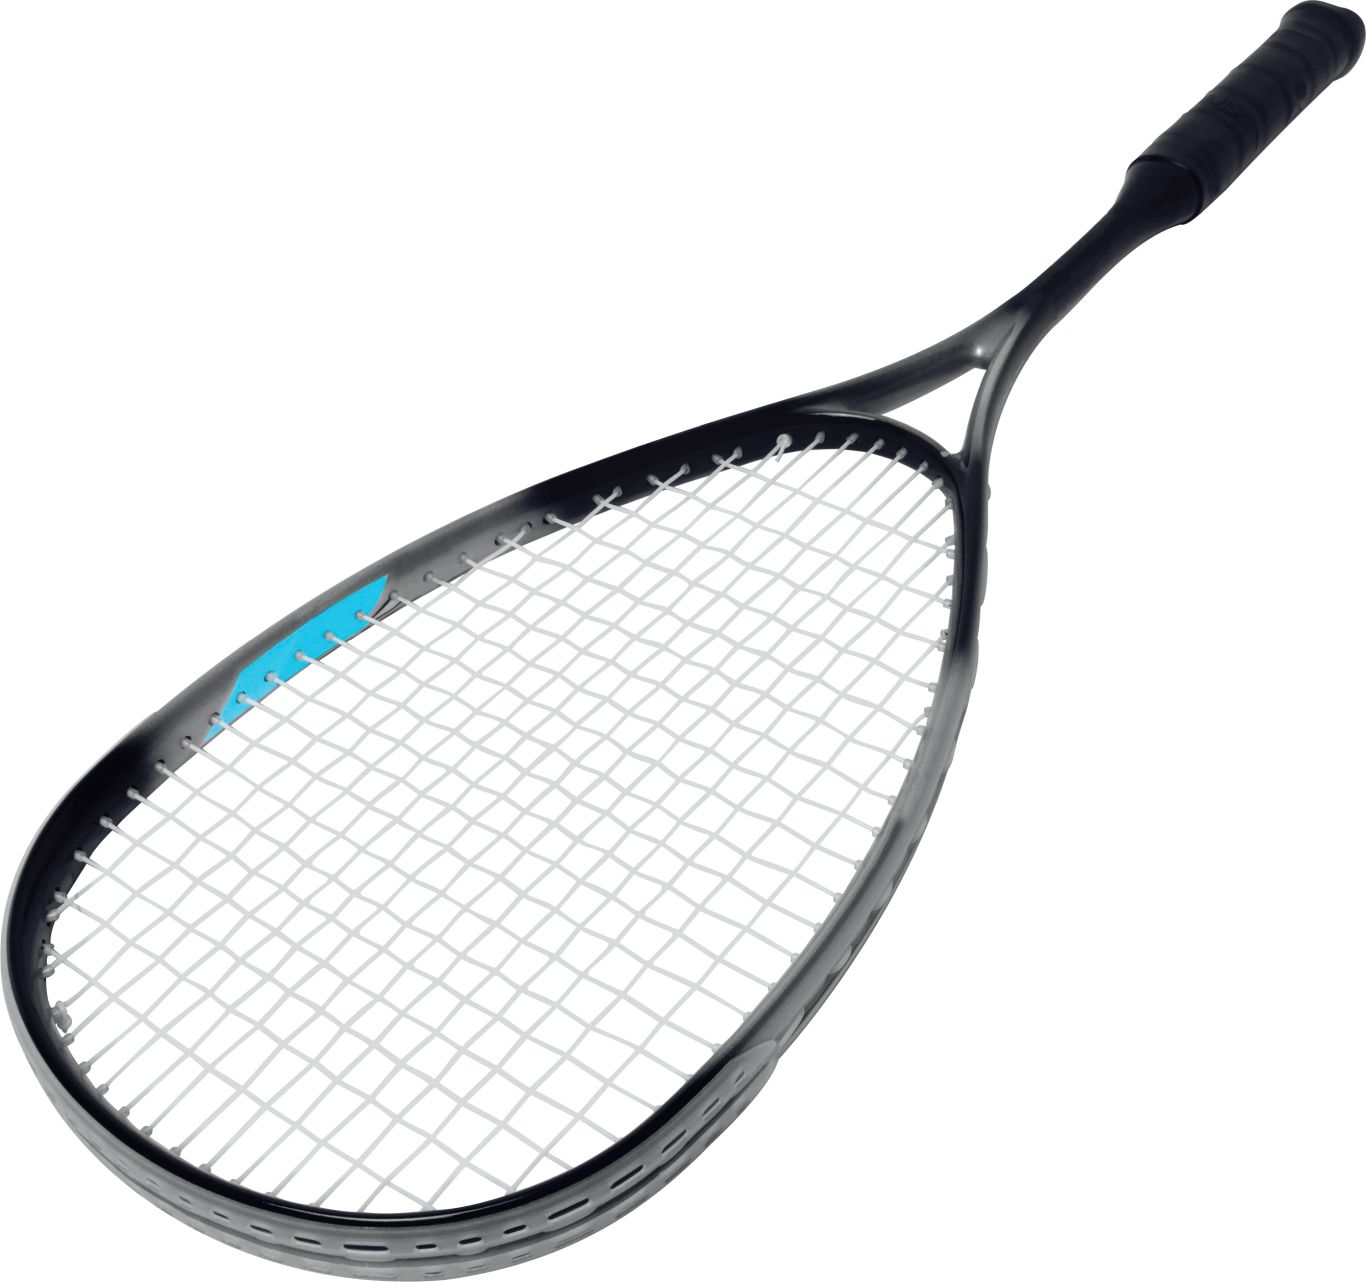 Tennis racket PNG image    图片编号:10389